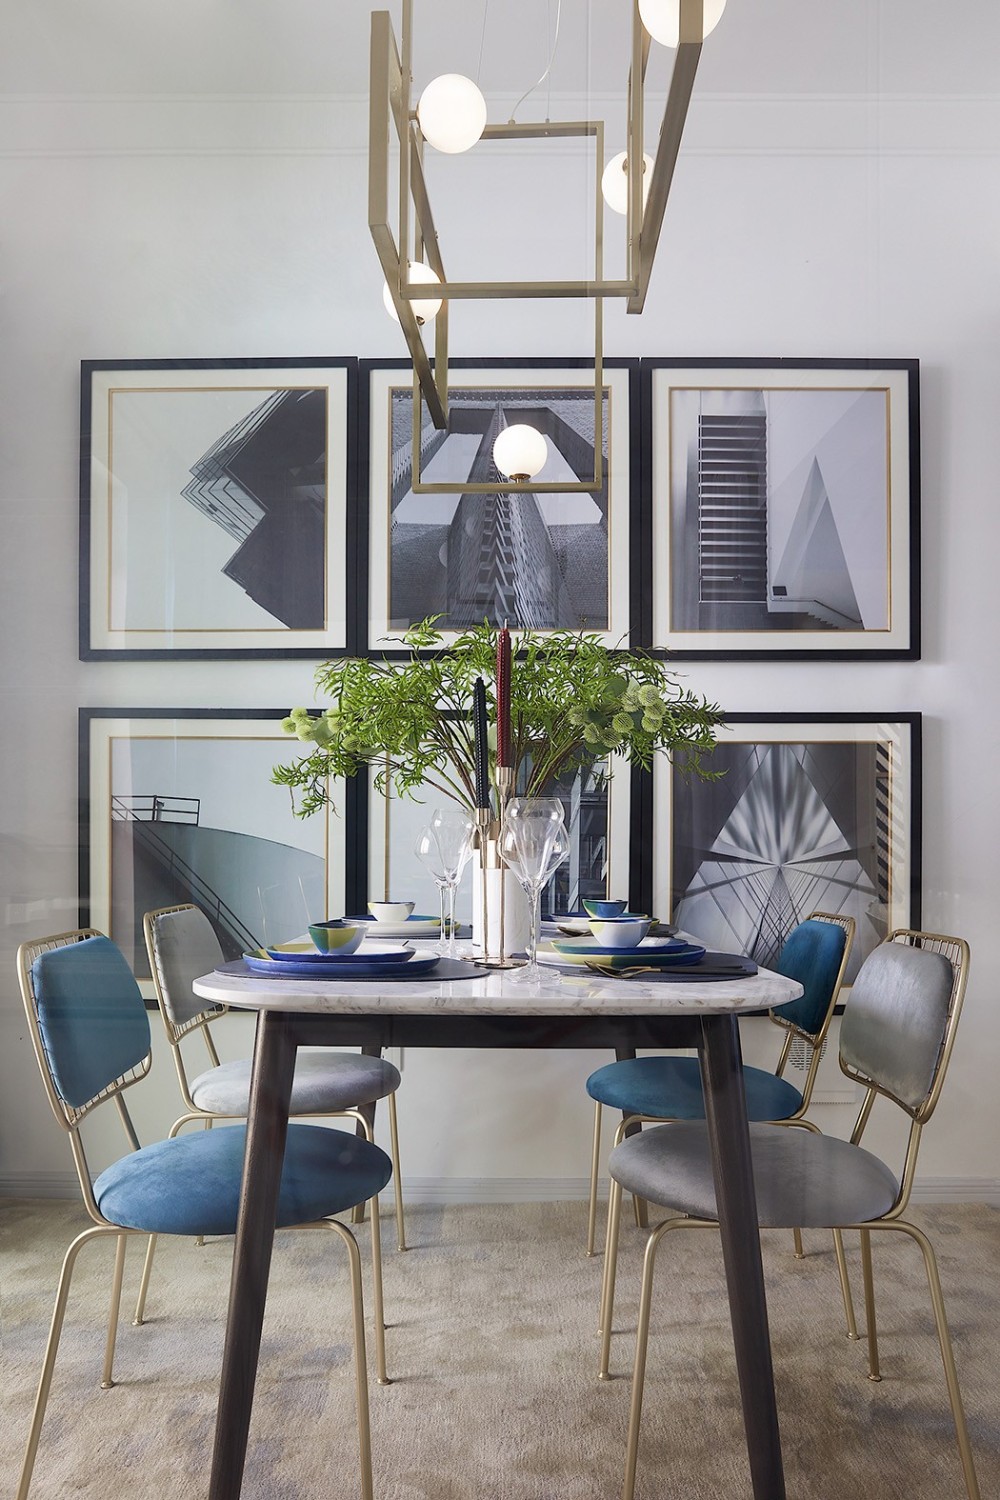 摩登轻奢风格室内家装案例效果图-餐厅餐桌椅